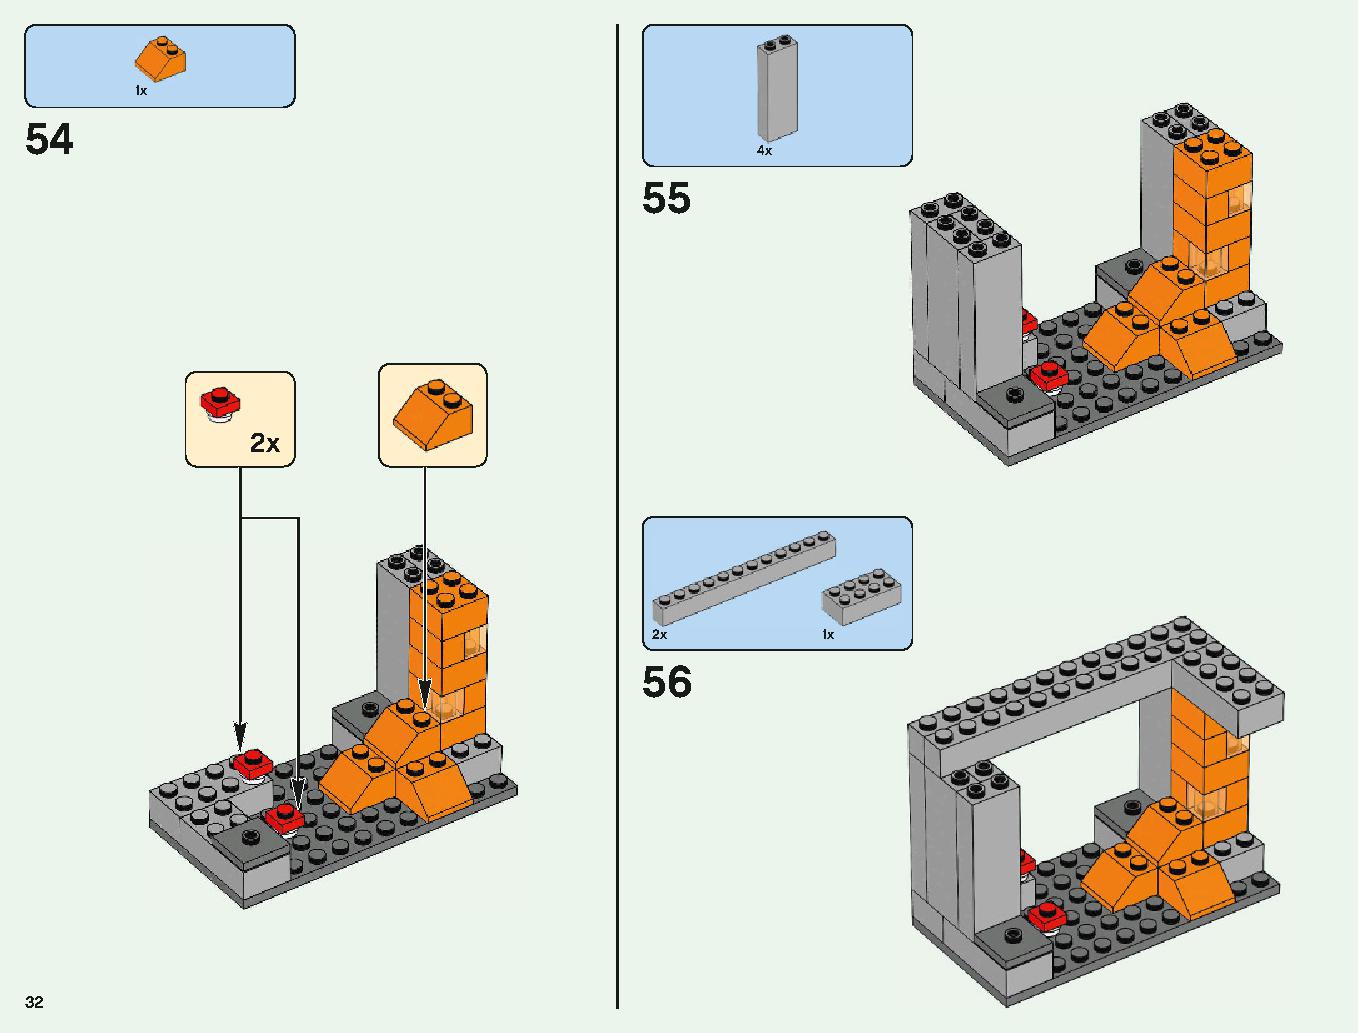 ベッドロックの冒険 21147 レゴの商品情報 レゴの説明書・組立方法 32 page